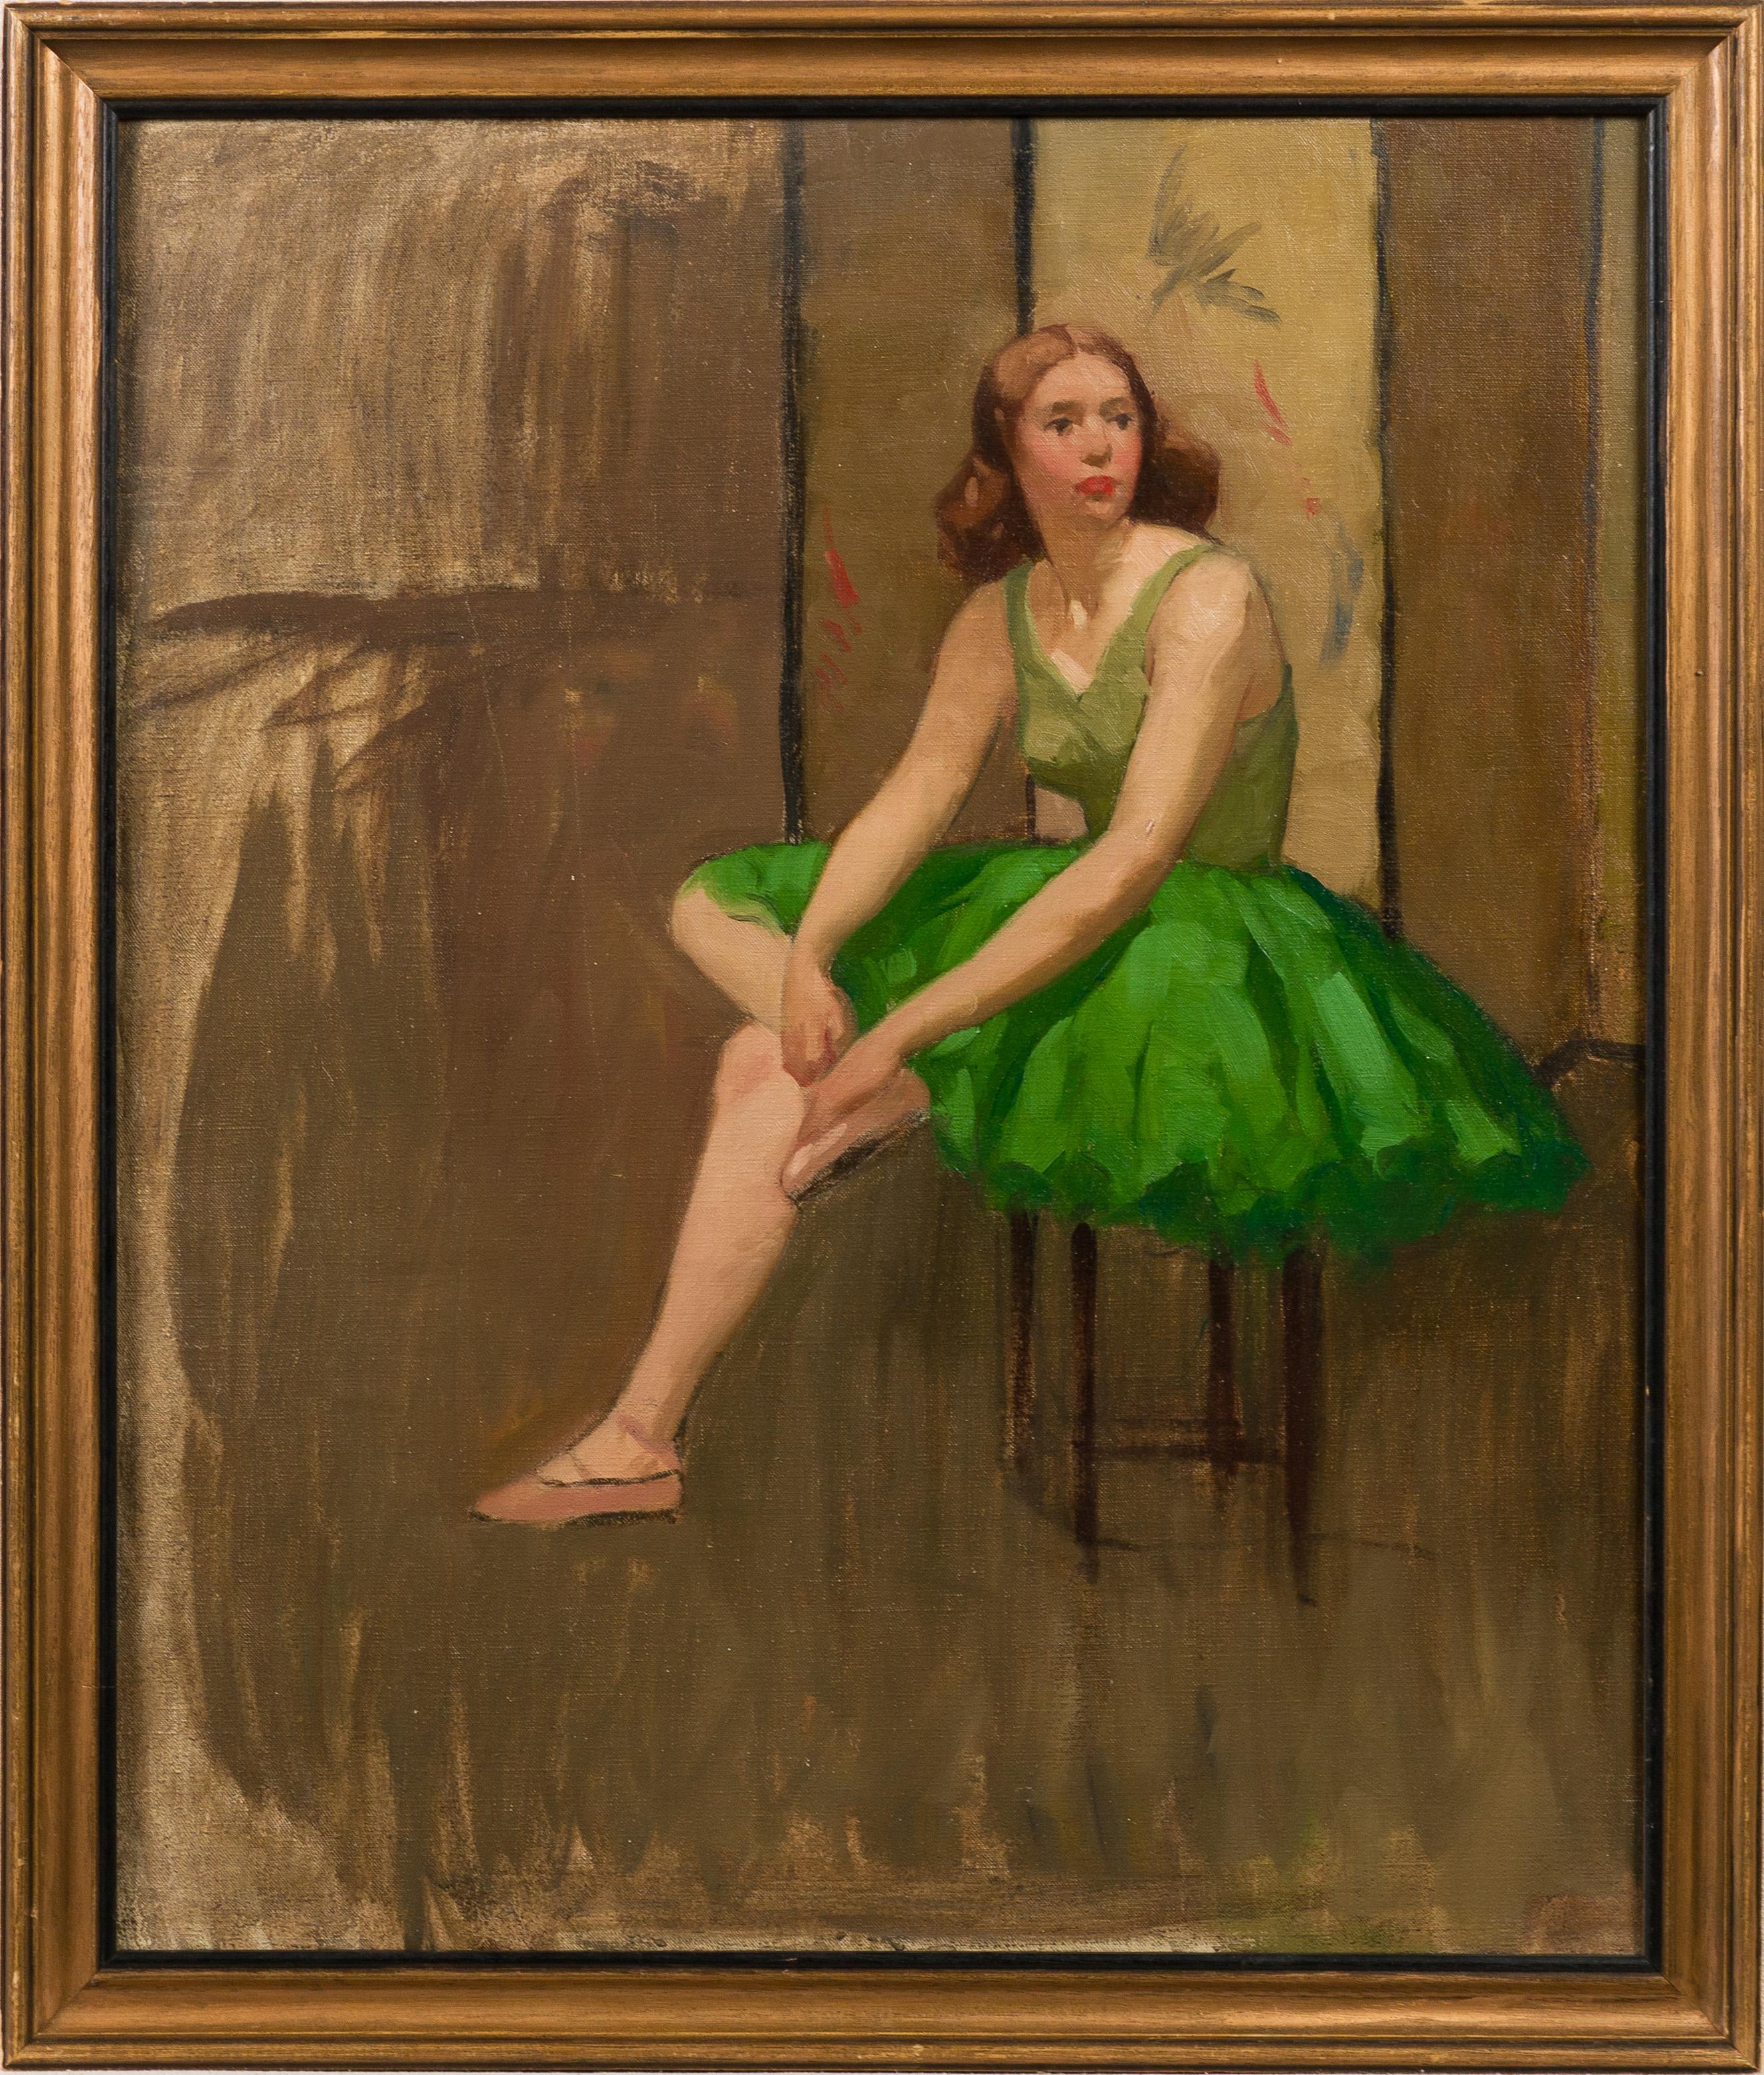 Portrait de ballerine américaine anciennement peint encadré